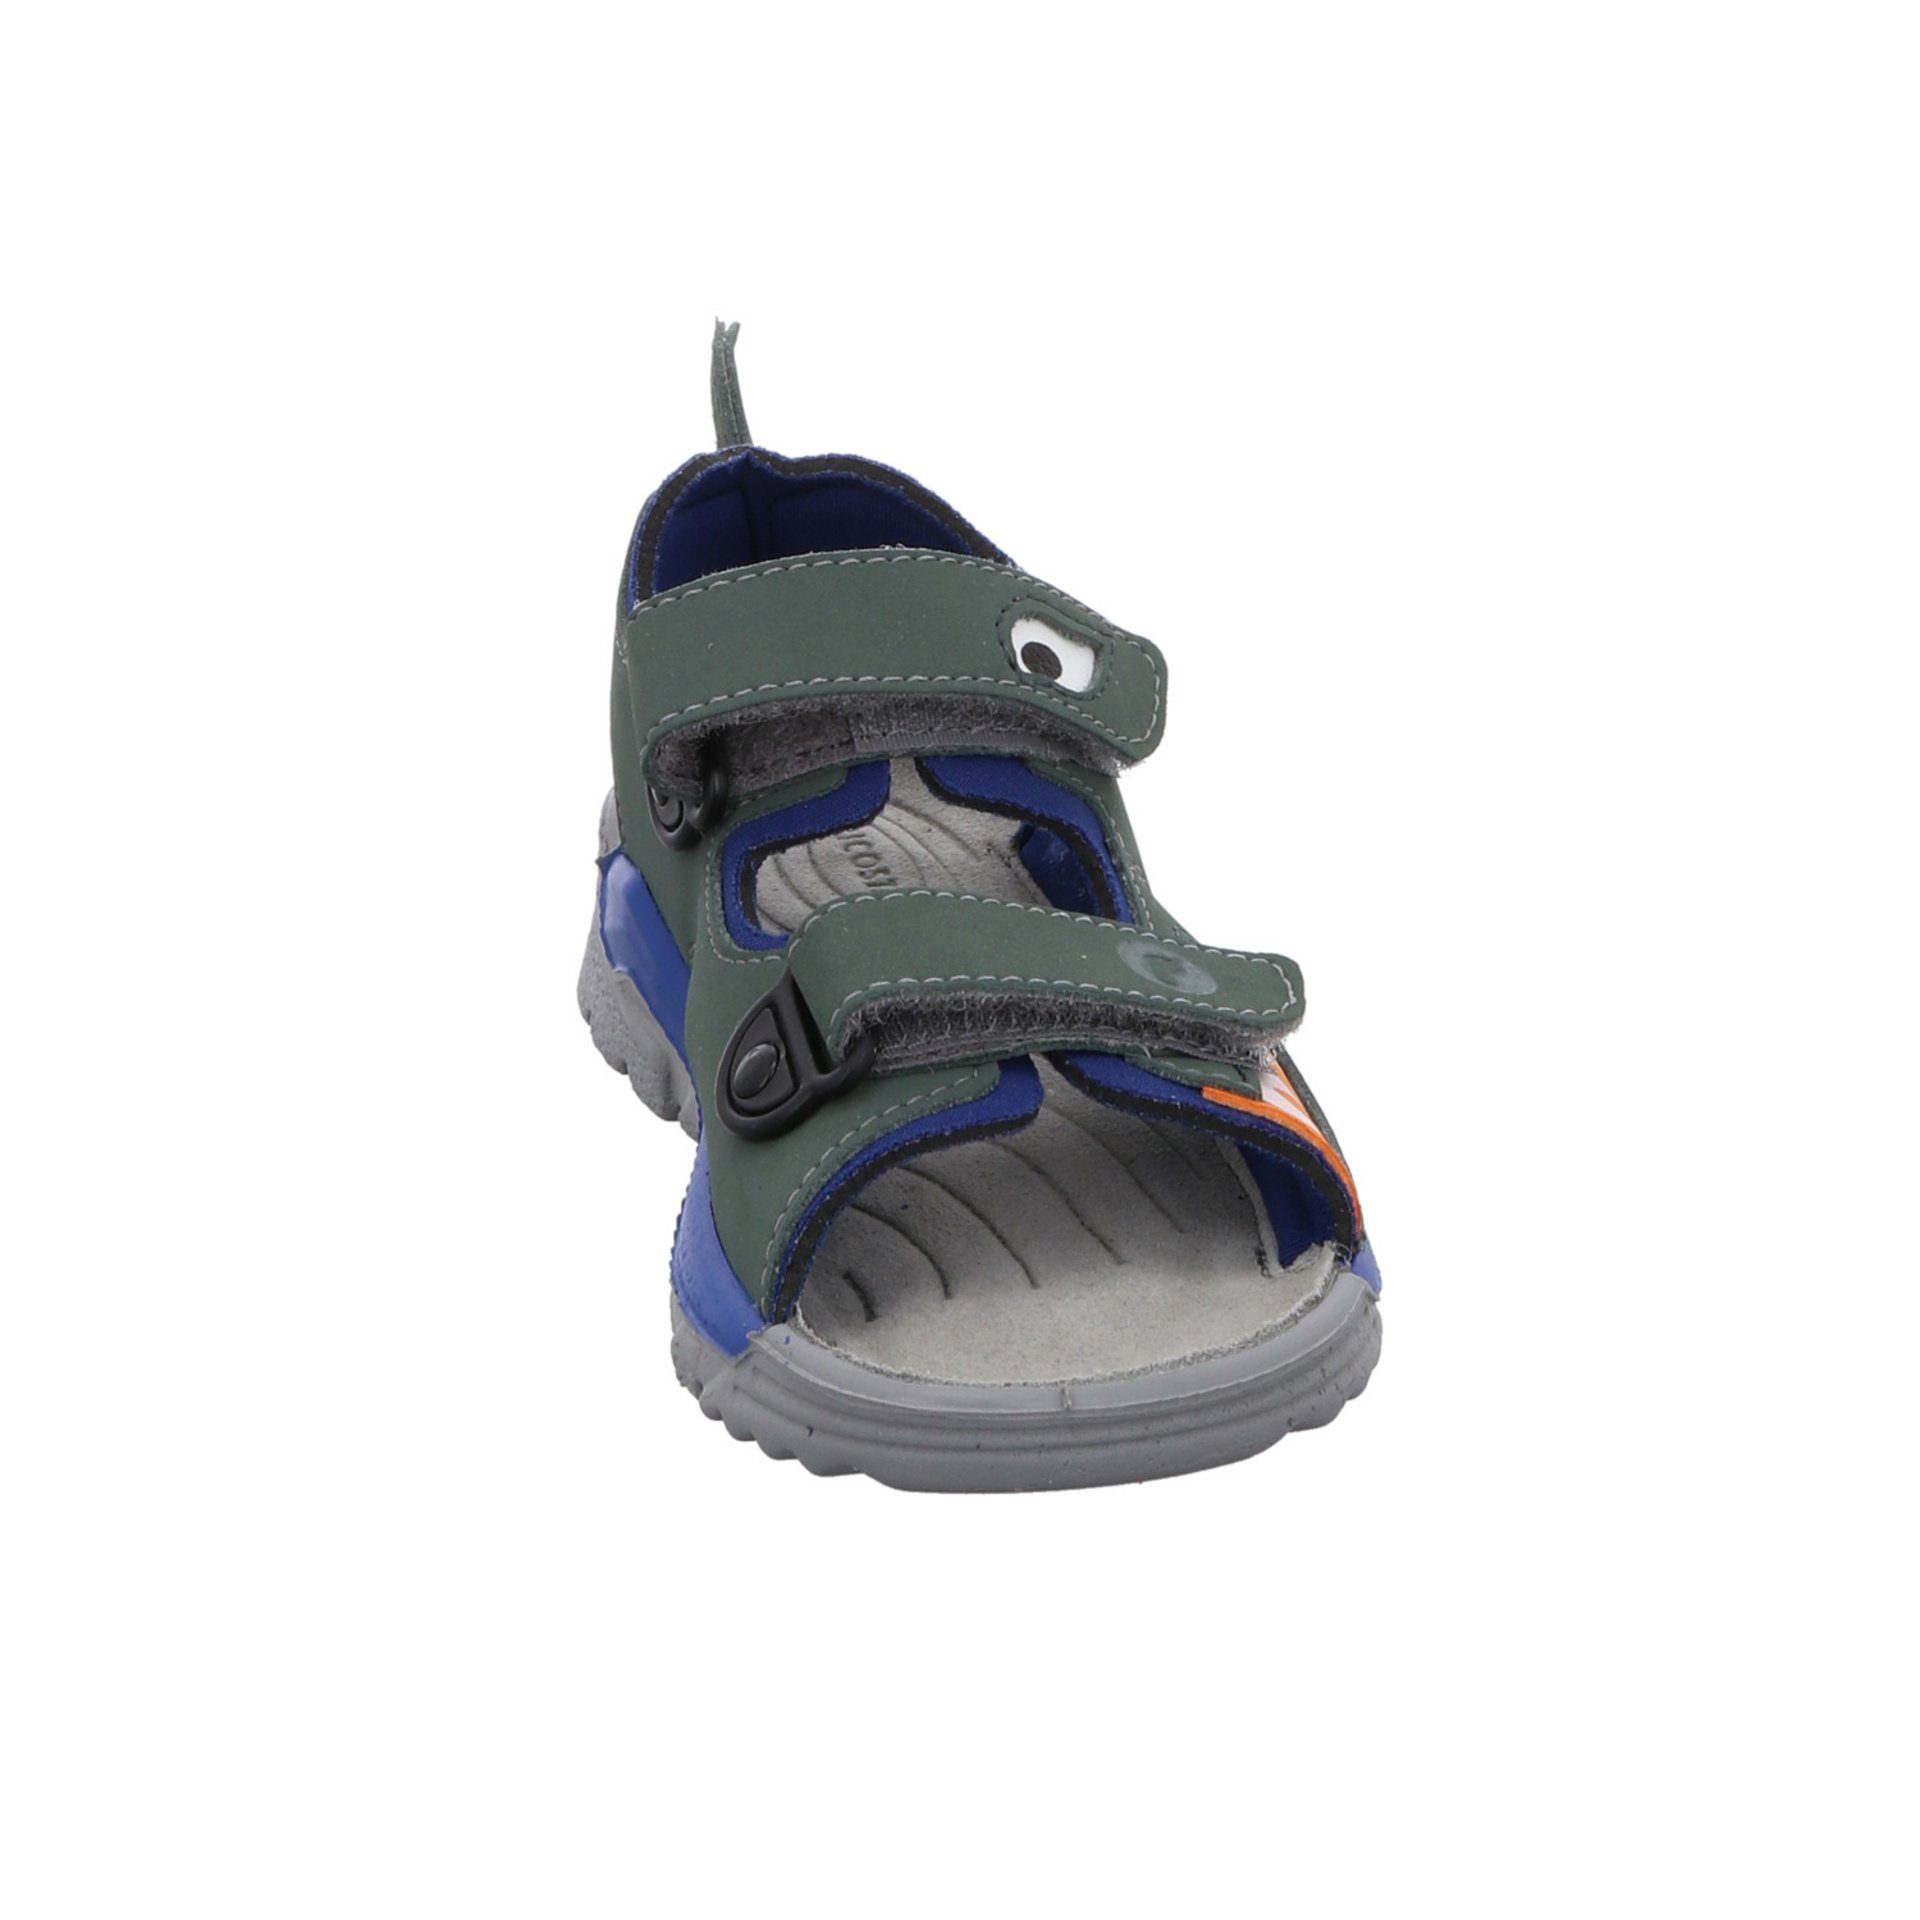 Sandale Jungen Ricosta Textil Schuhe Kinderschuhe Sandale Shark grün Sandalen